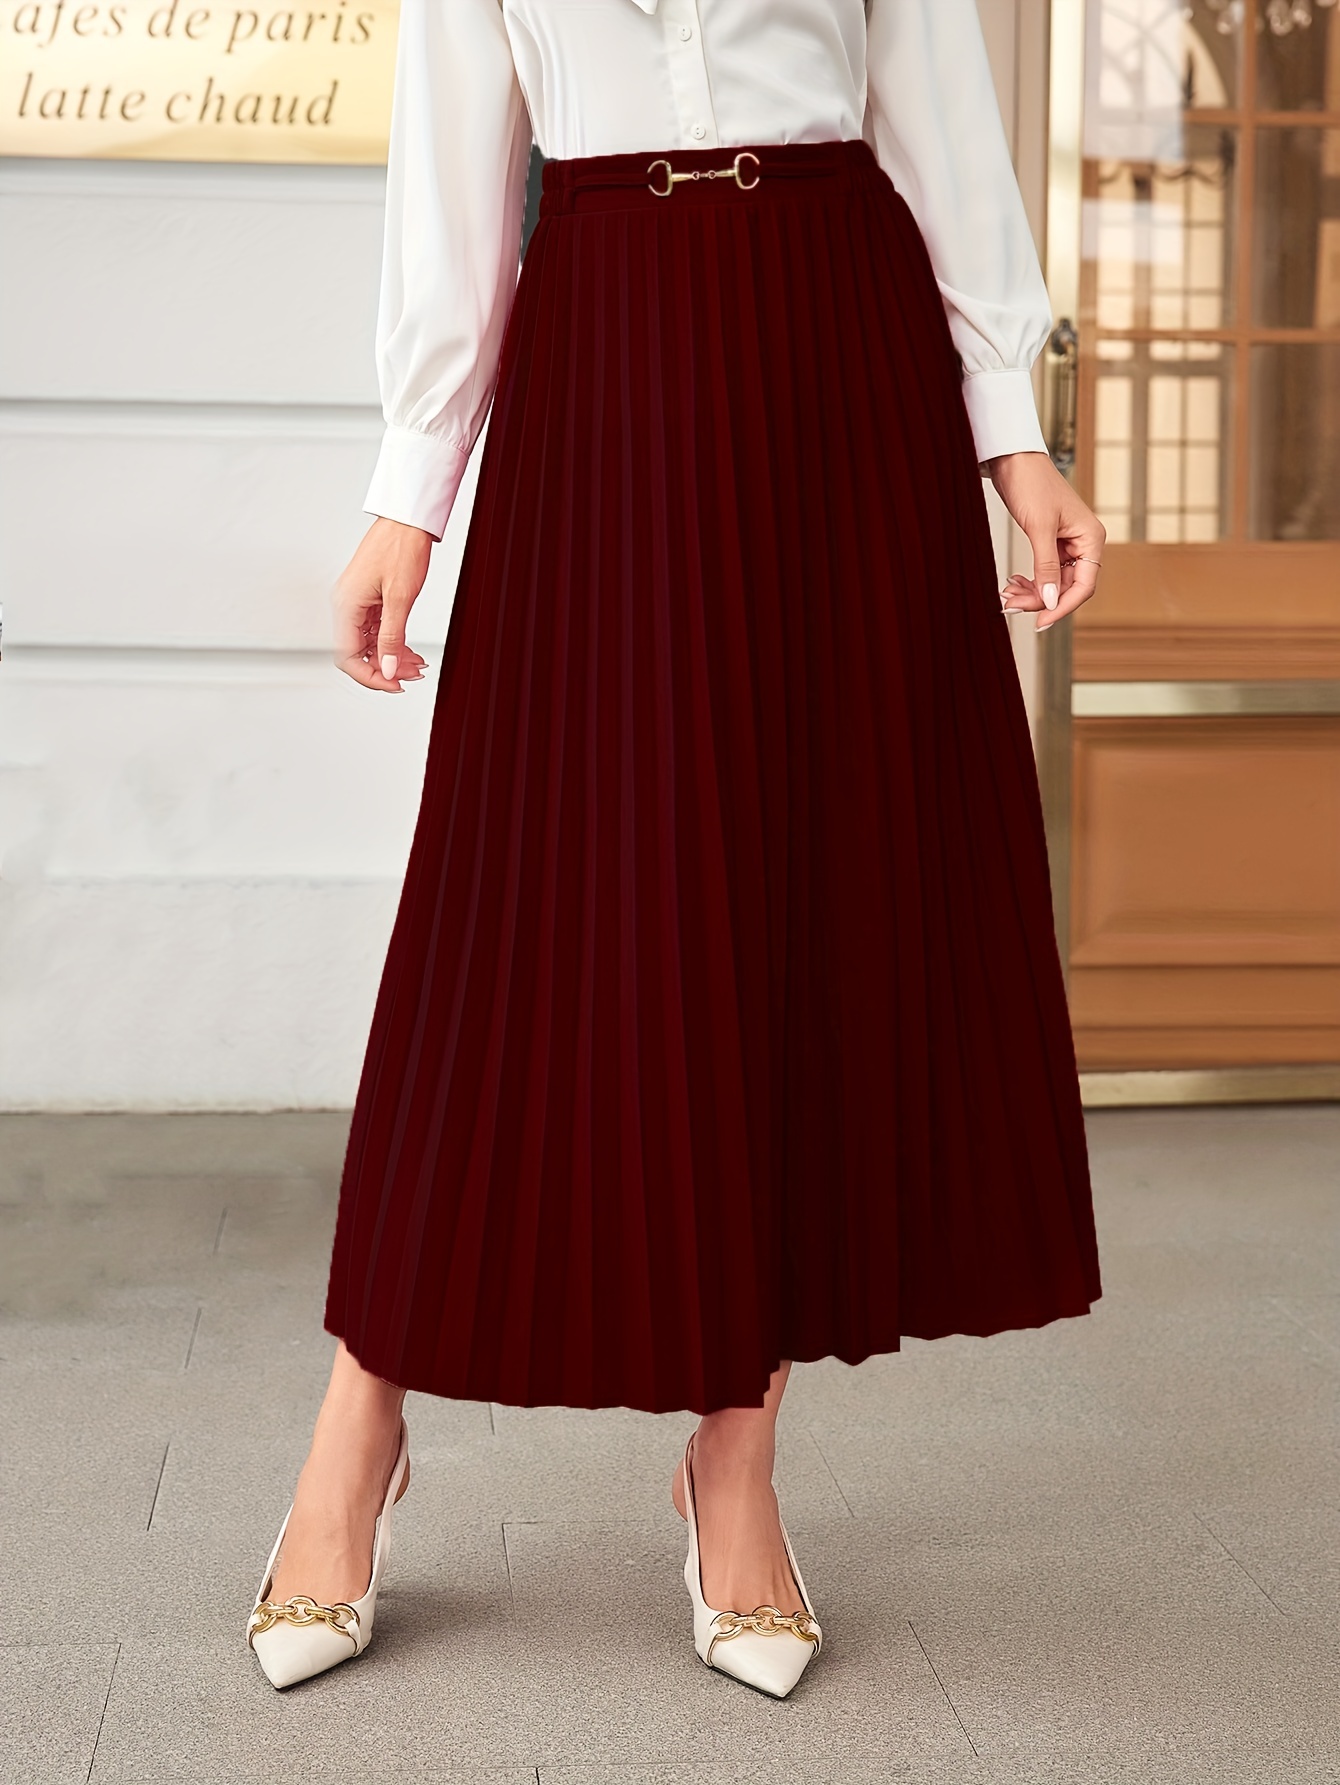 jupe plisse framboise élégante - Ref ju052 - Jupe femme longue